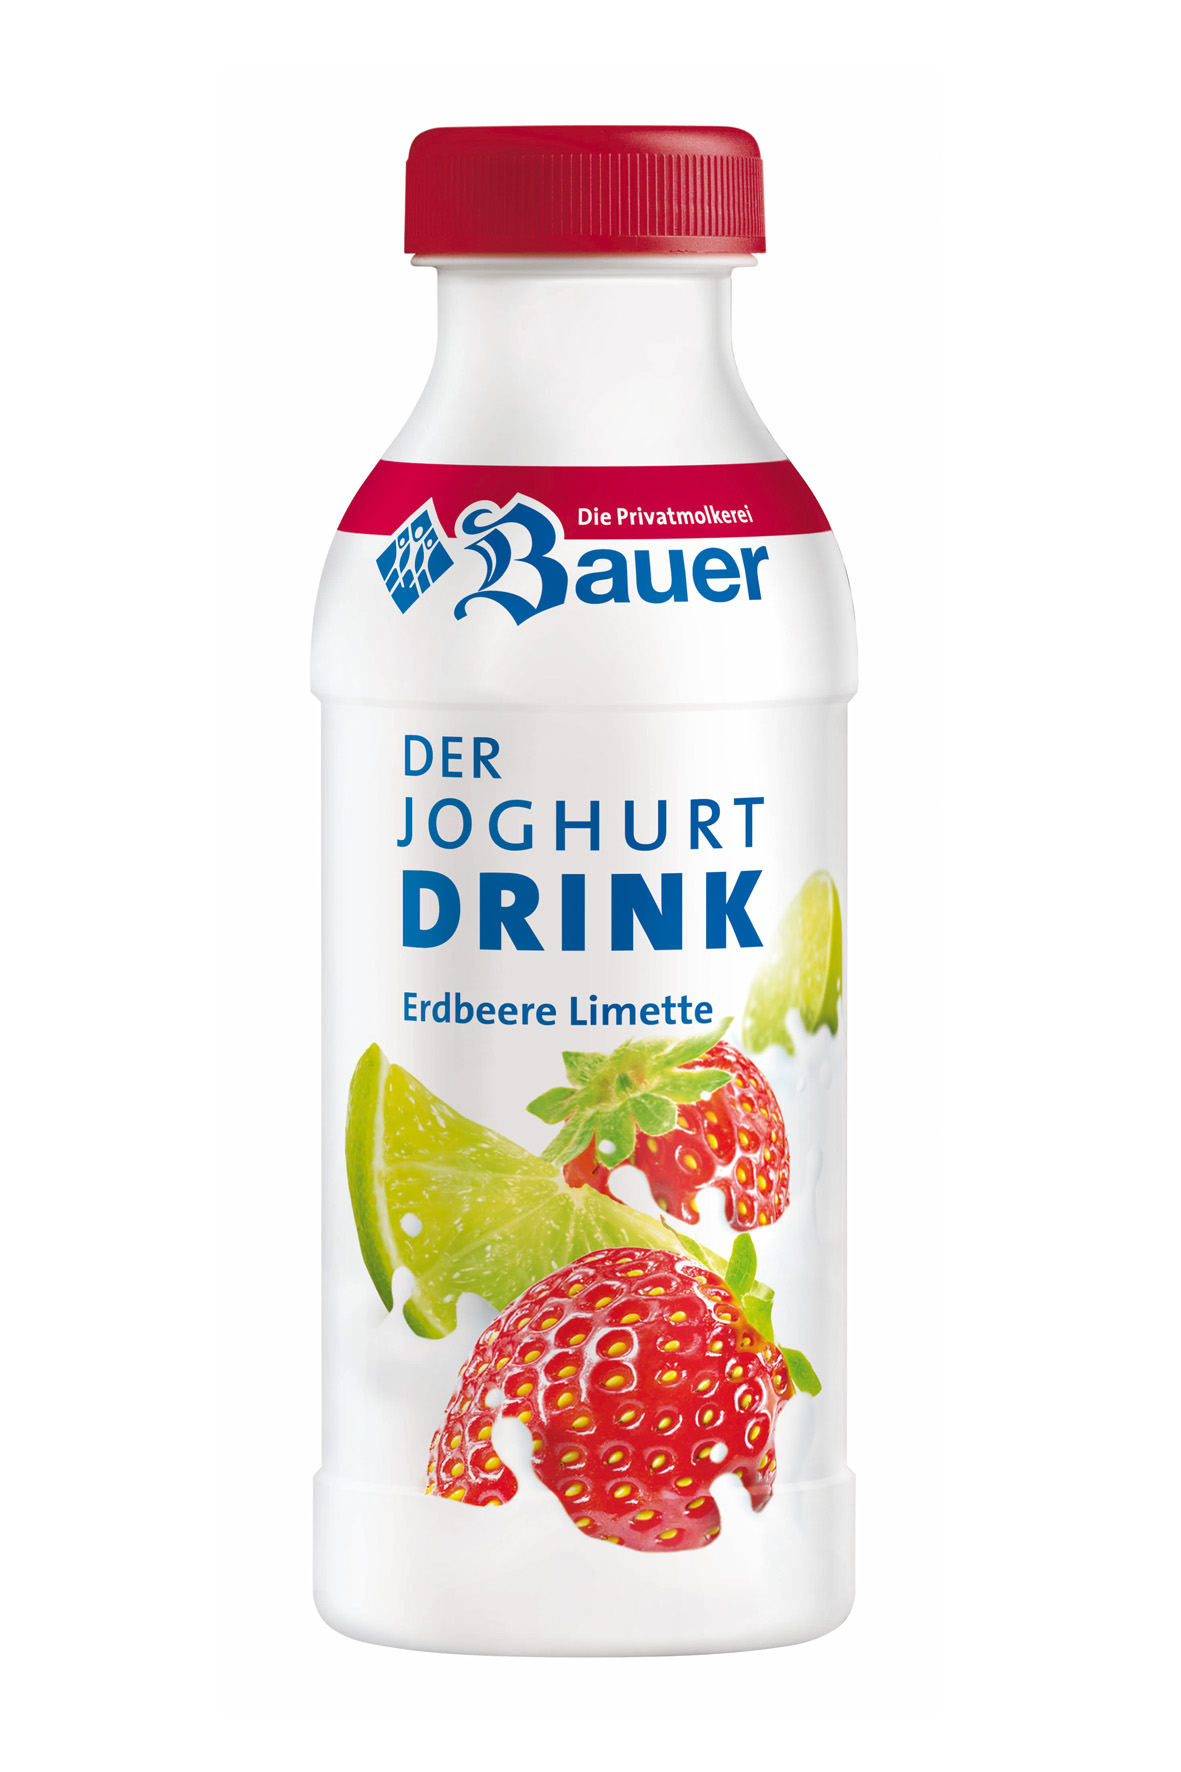 Frischer Trinkgenuss:Bauer Joghurt-Drinks in neuem Design, Privatmolkerei  Bauer GmbH & Co. KG, Story - lifePR